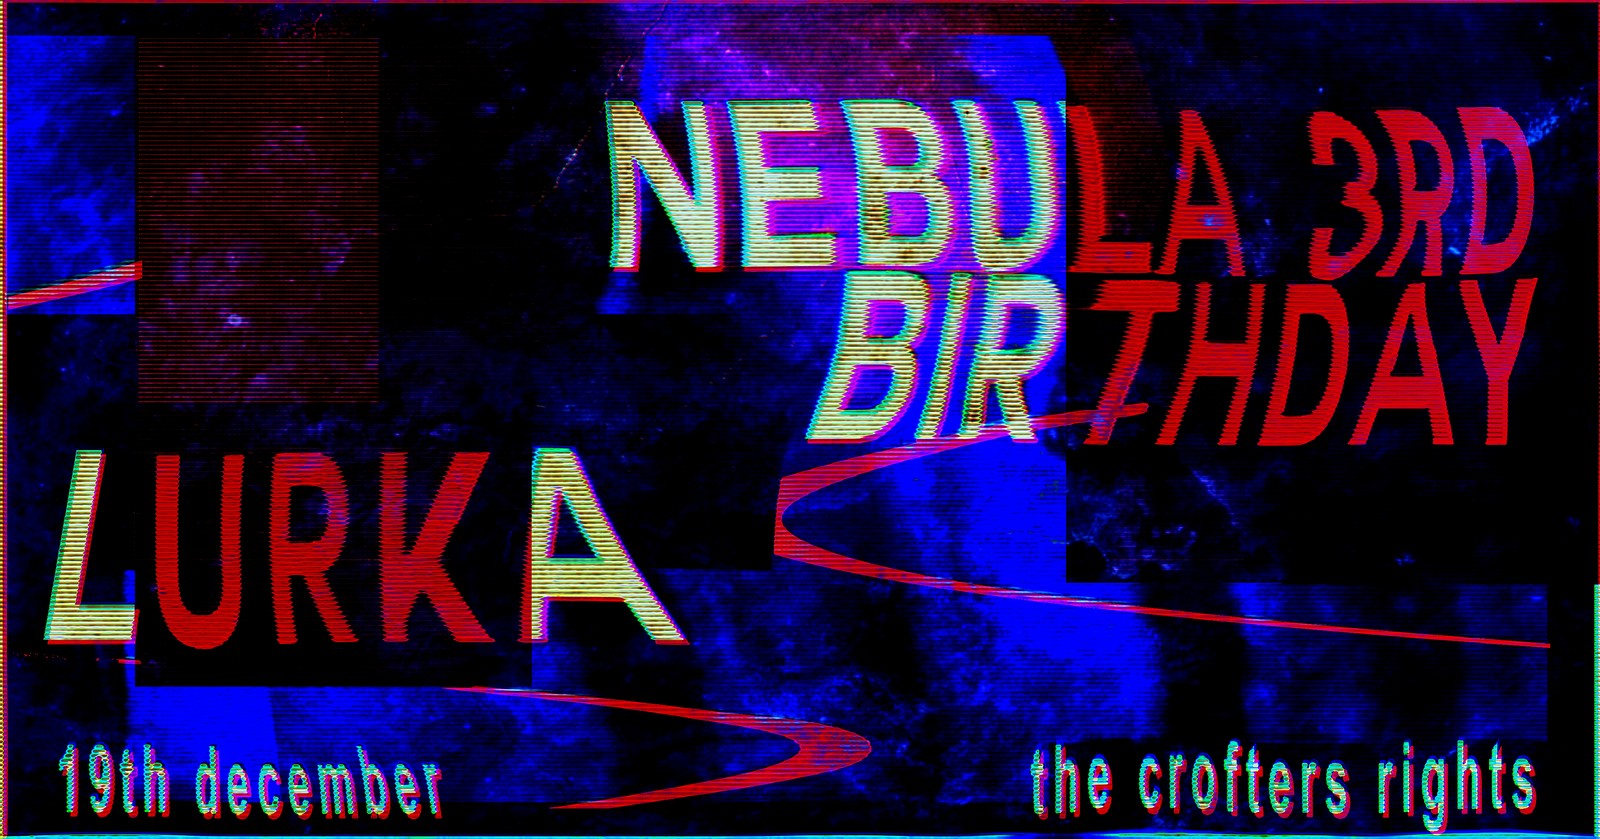 Nebula 3rd Birthday at Crofters Rights